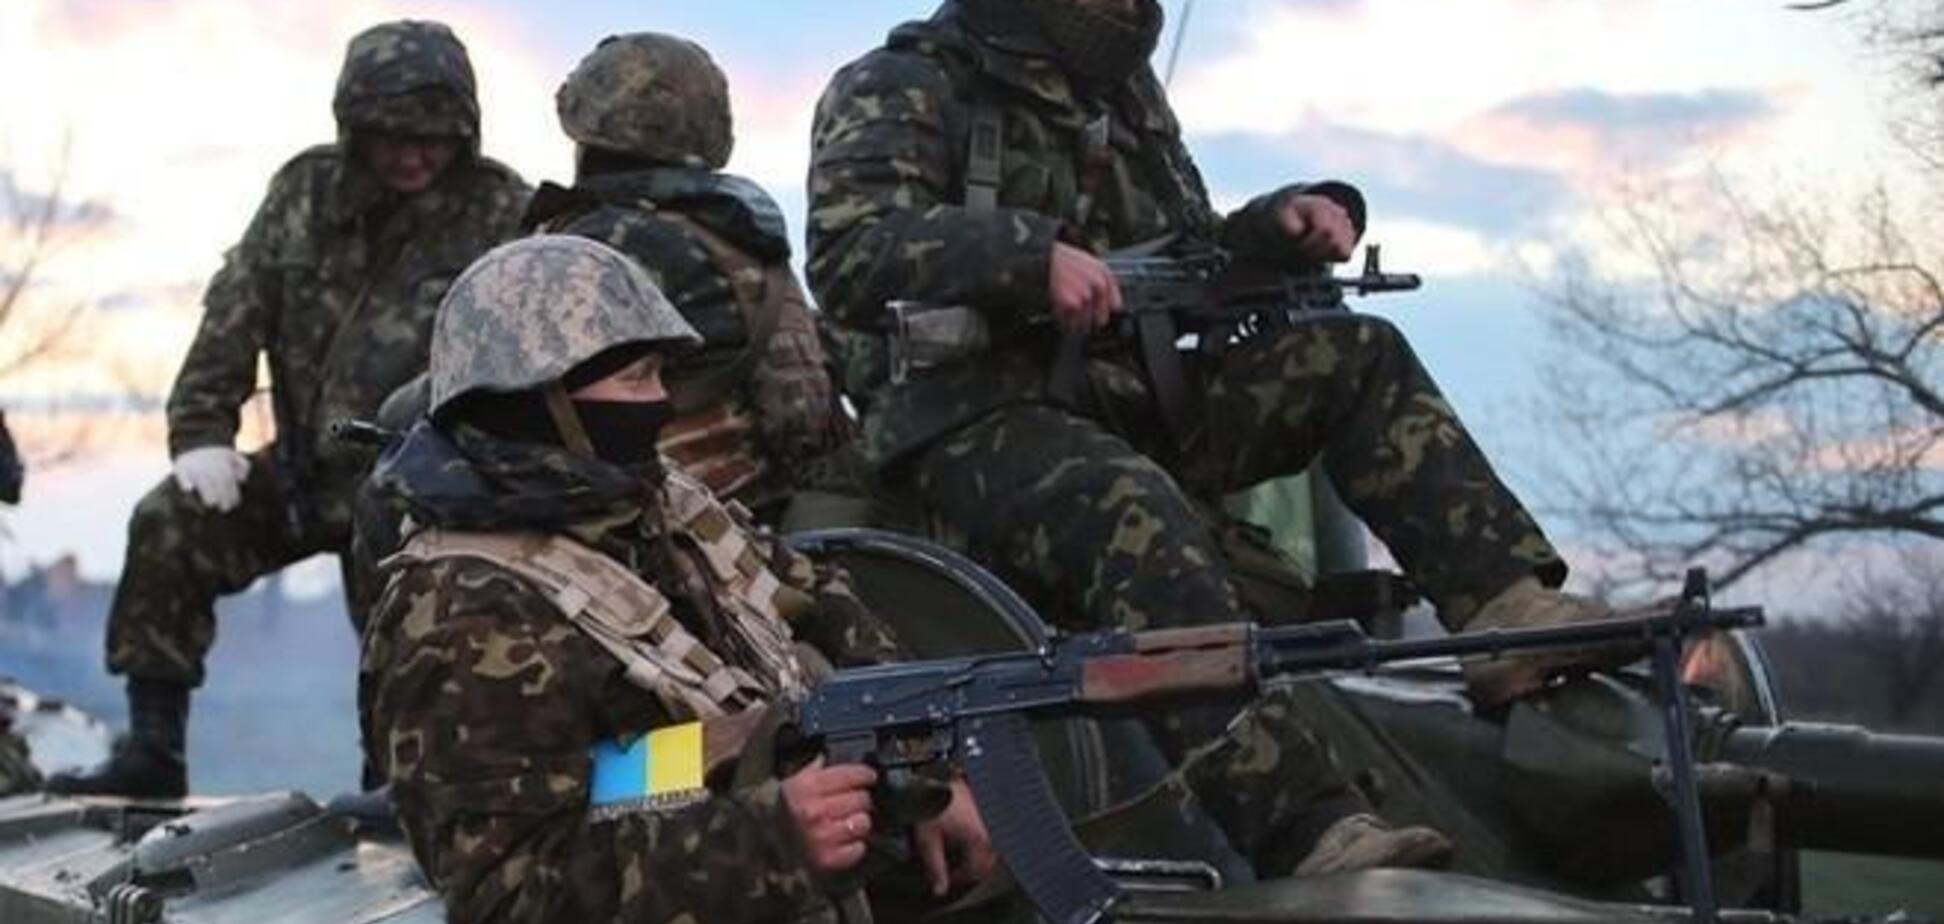 Один захвачен, четверо уничтожены: ВСУ сообщили о мощном успехе на Донбассе 